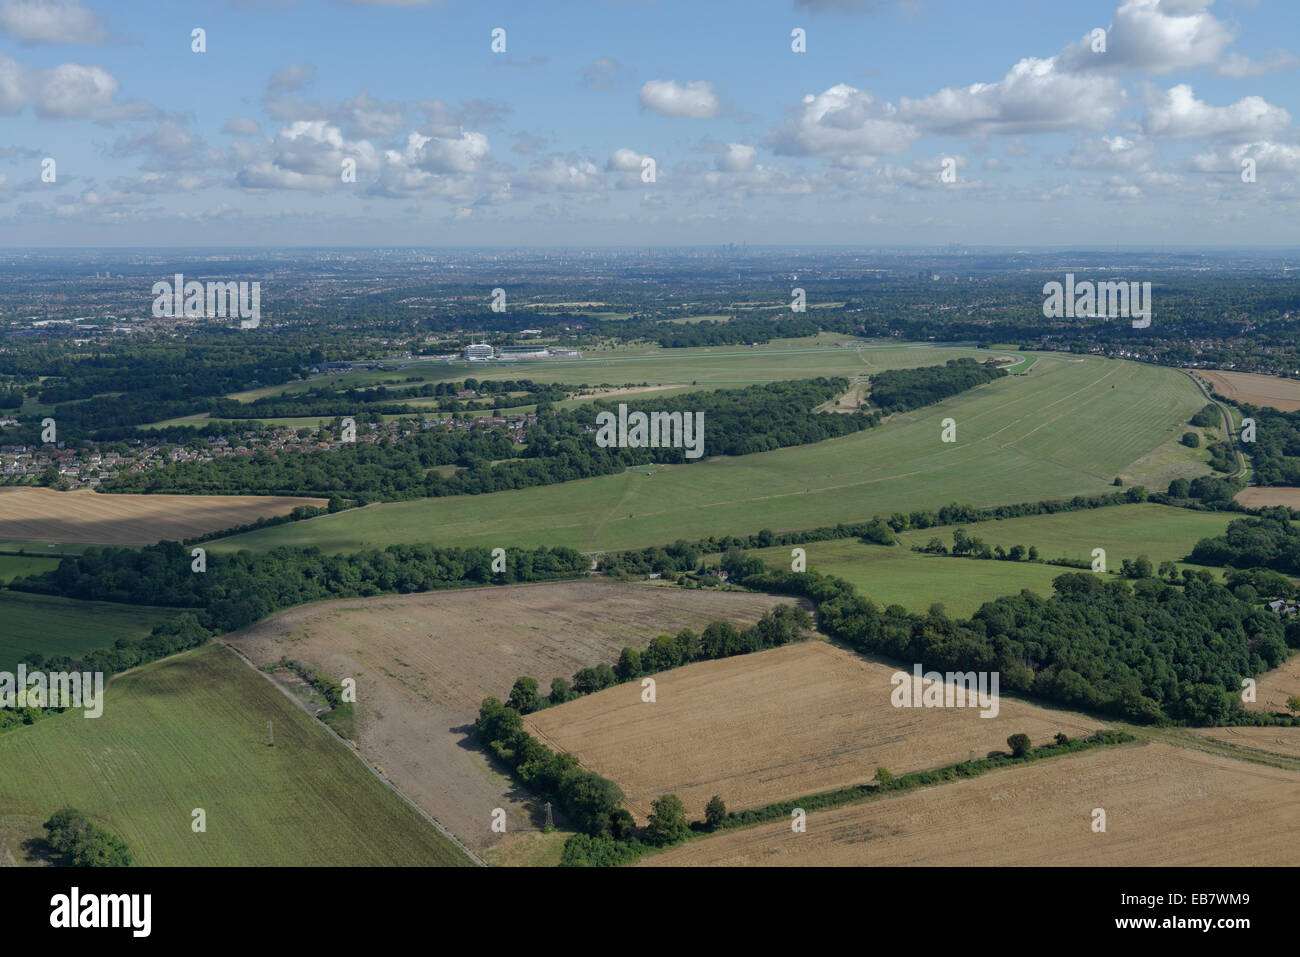 Eine Luftaufnahme von Epsom Downs mit der Rennbahn sichtbar und die Hochhäuser von London in der Ferne Stockfoto